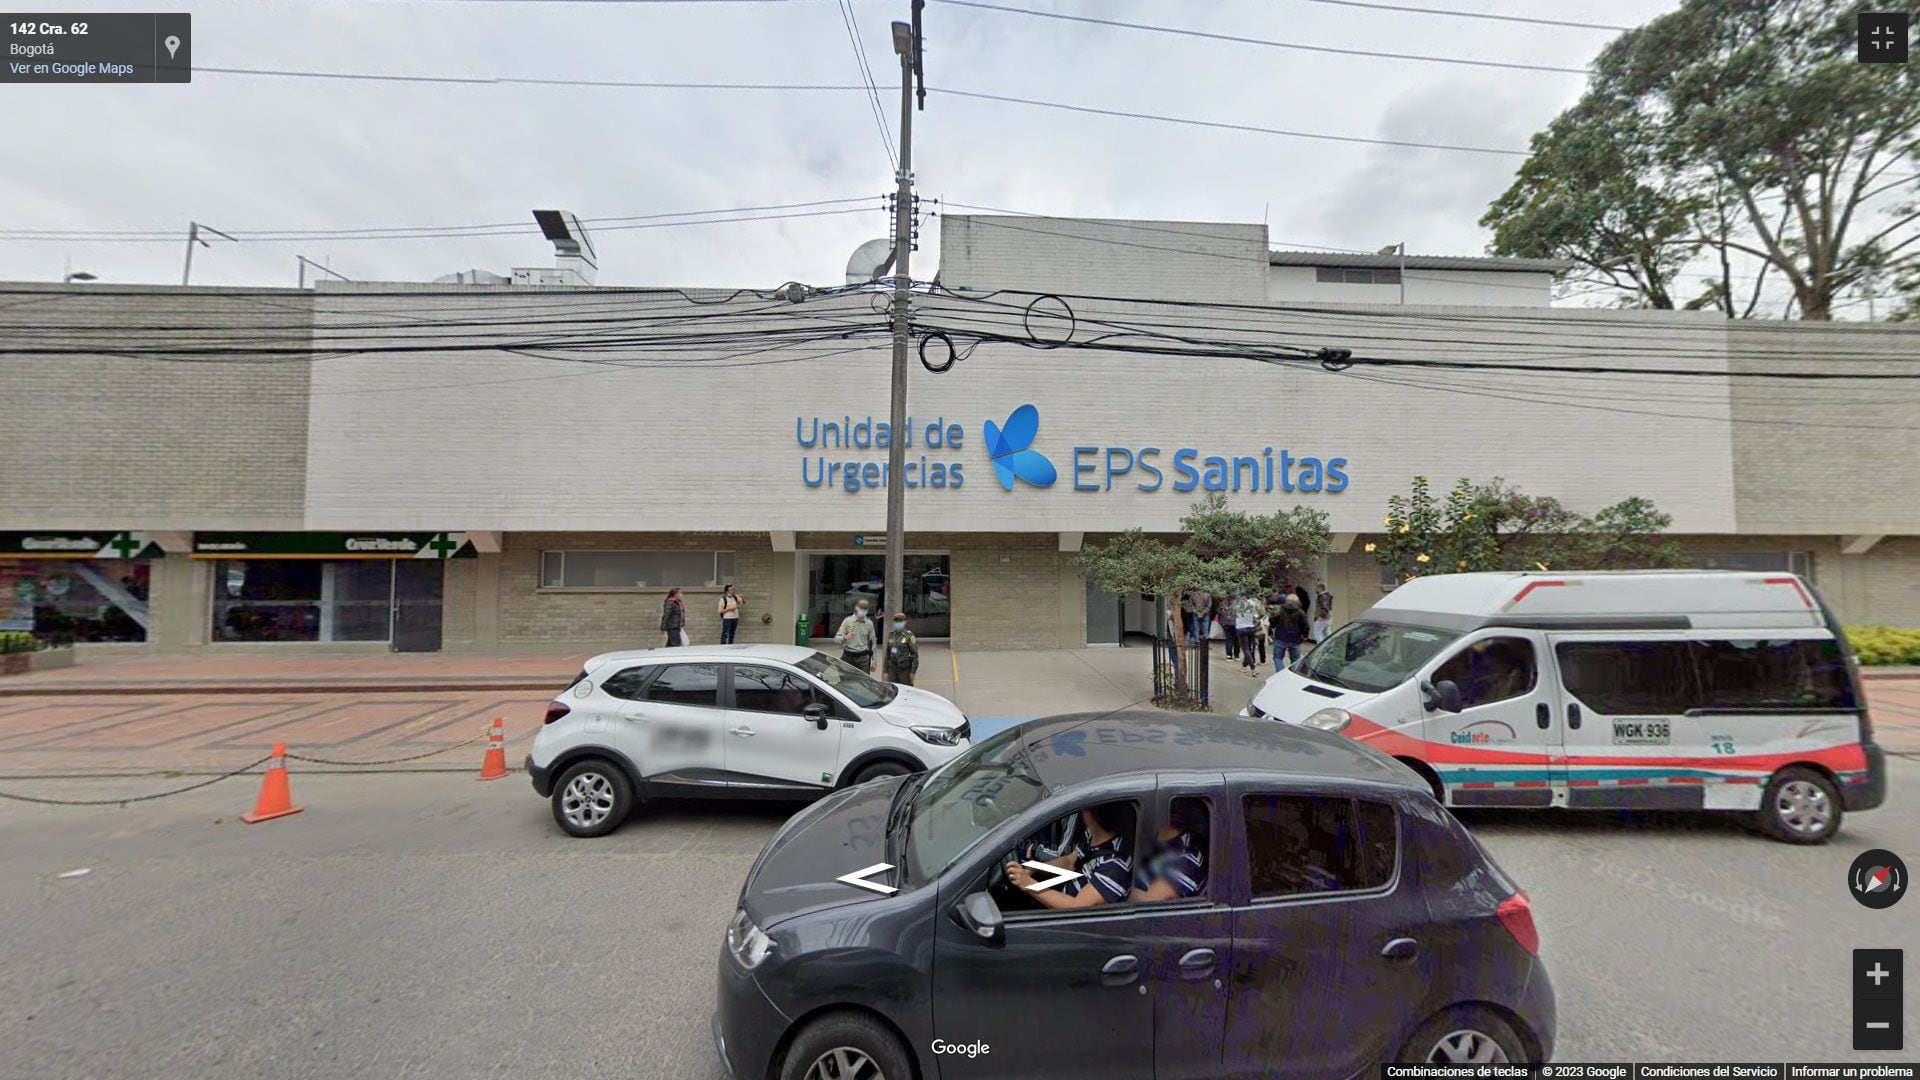 En el lugar, actualmente se ubica un Centro de Urgencias de Sanitas (Google Street View)